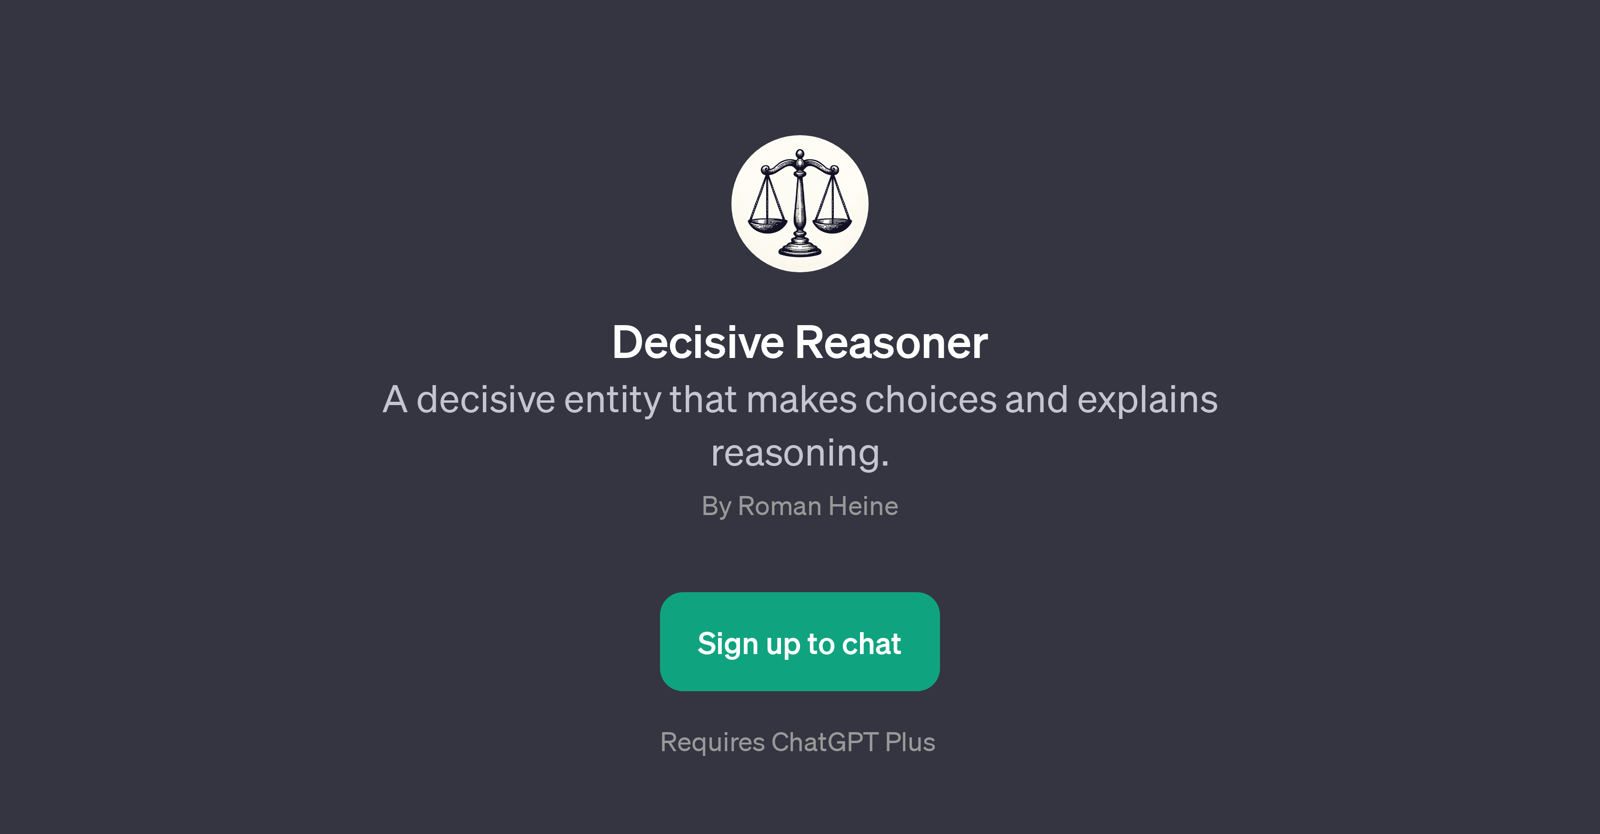 Decisive Reasoner website